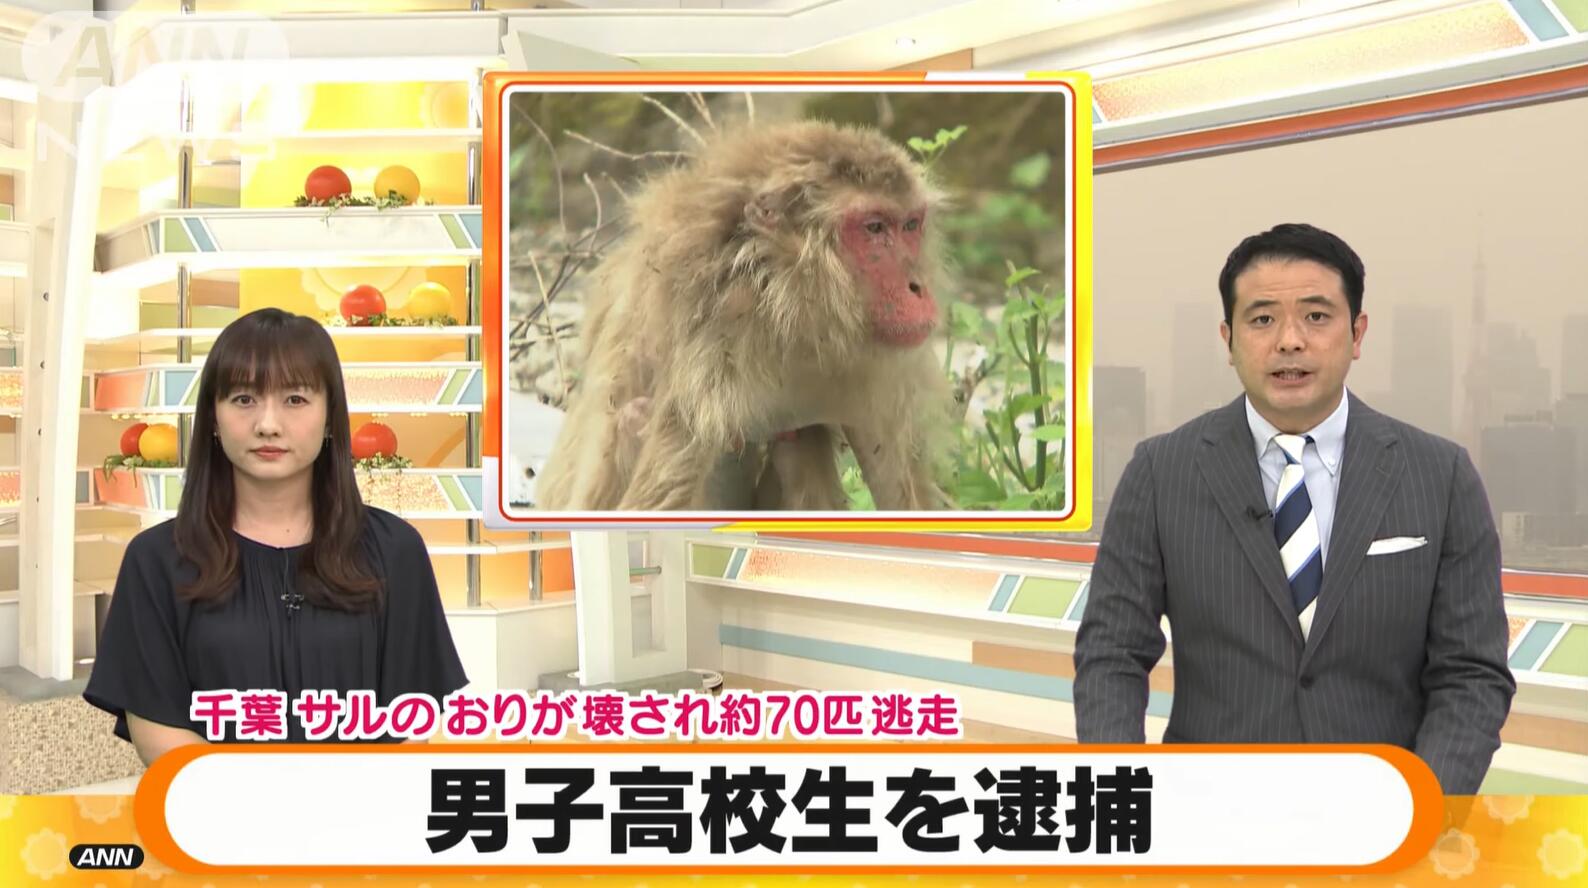 日本一16岁少年涉嫌故意损害猴子饲养笼 遭千叶警方逮捕